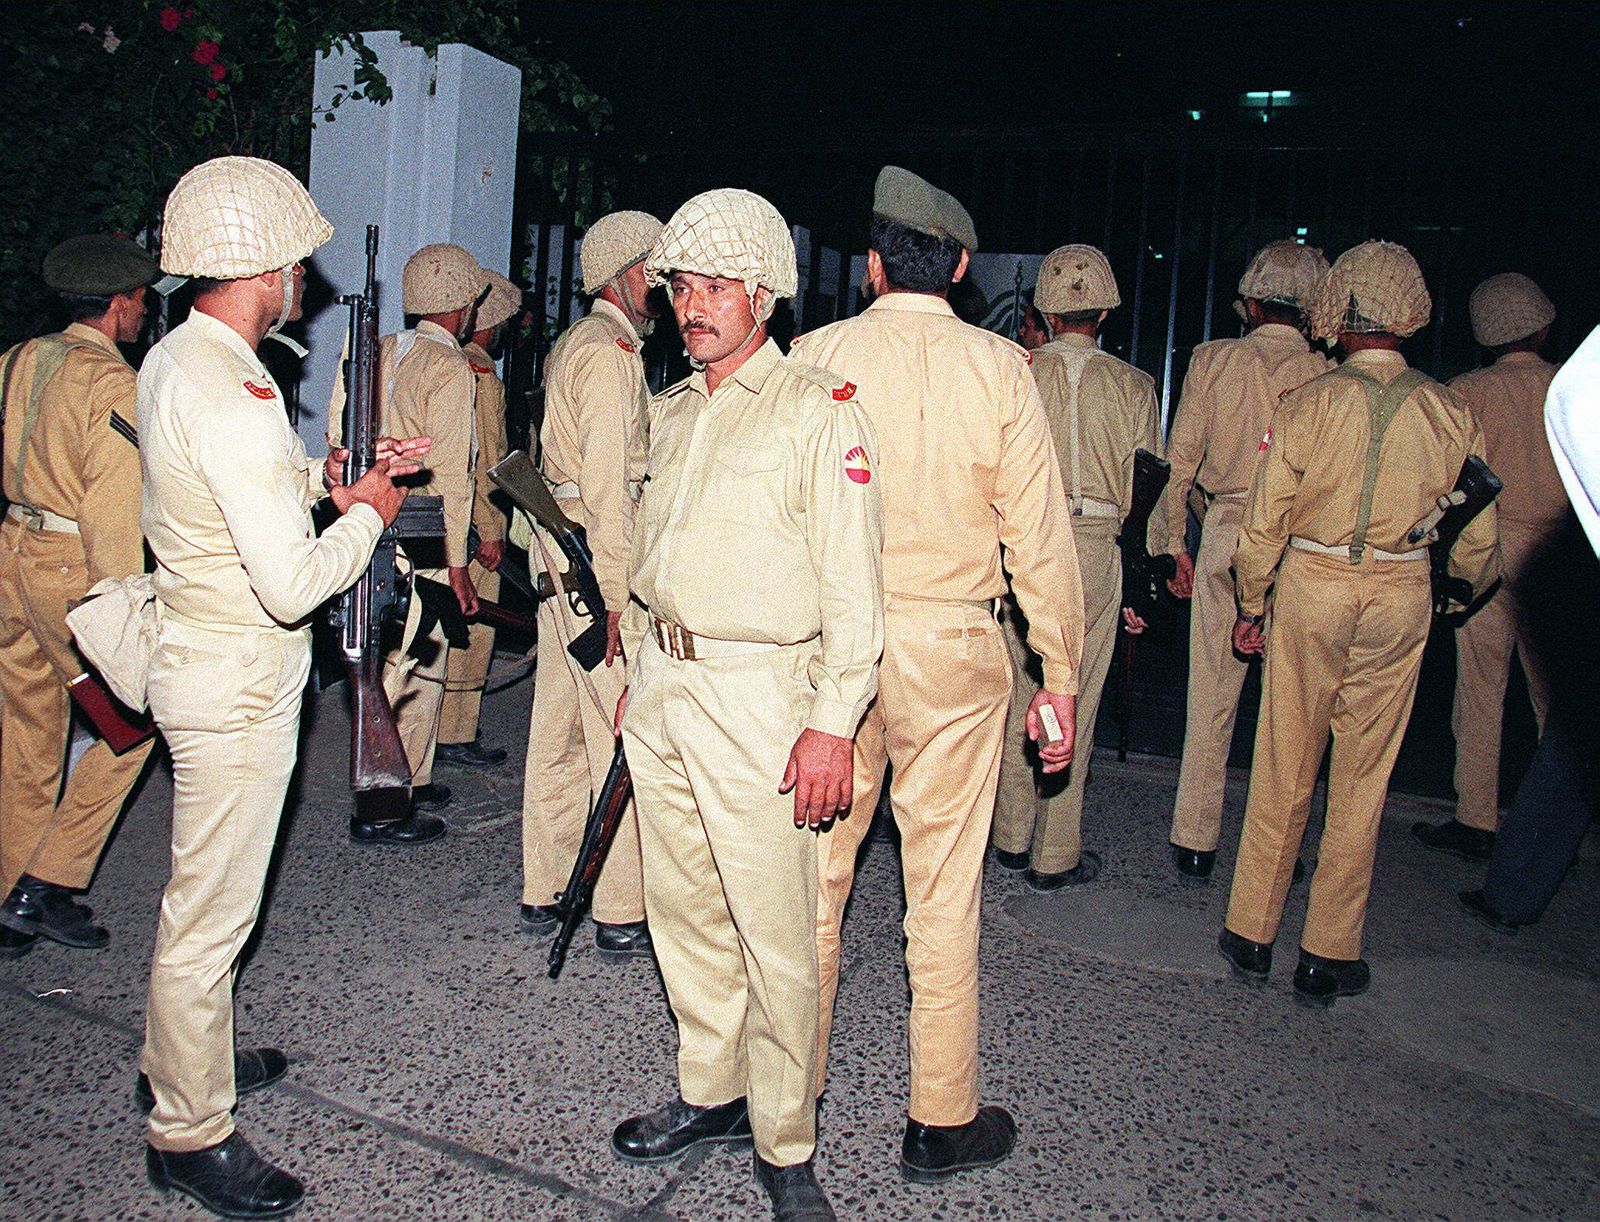 جنود من الجيش الباكستاني يقتحمون مقر التلفزيون في العاصمة إسلام آباد بعد الإعلان عن إقالة قائد الجيش الجنرال برويز مشرف 12 أكتوبر 1999 - AFP